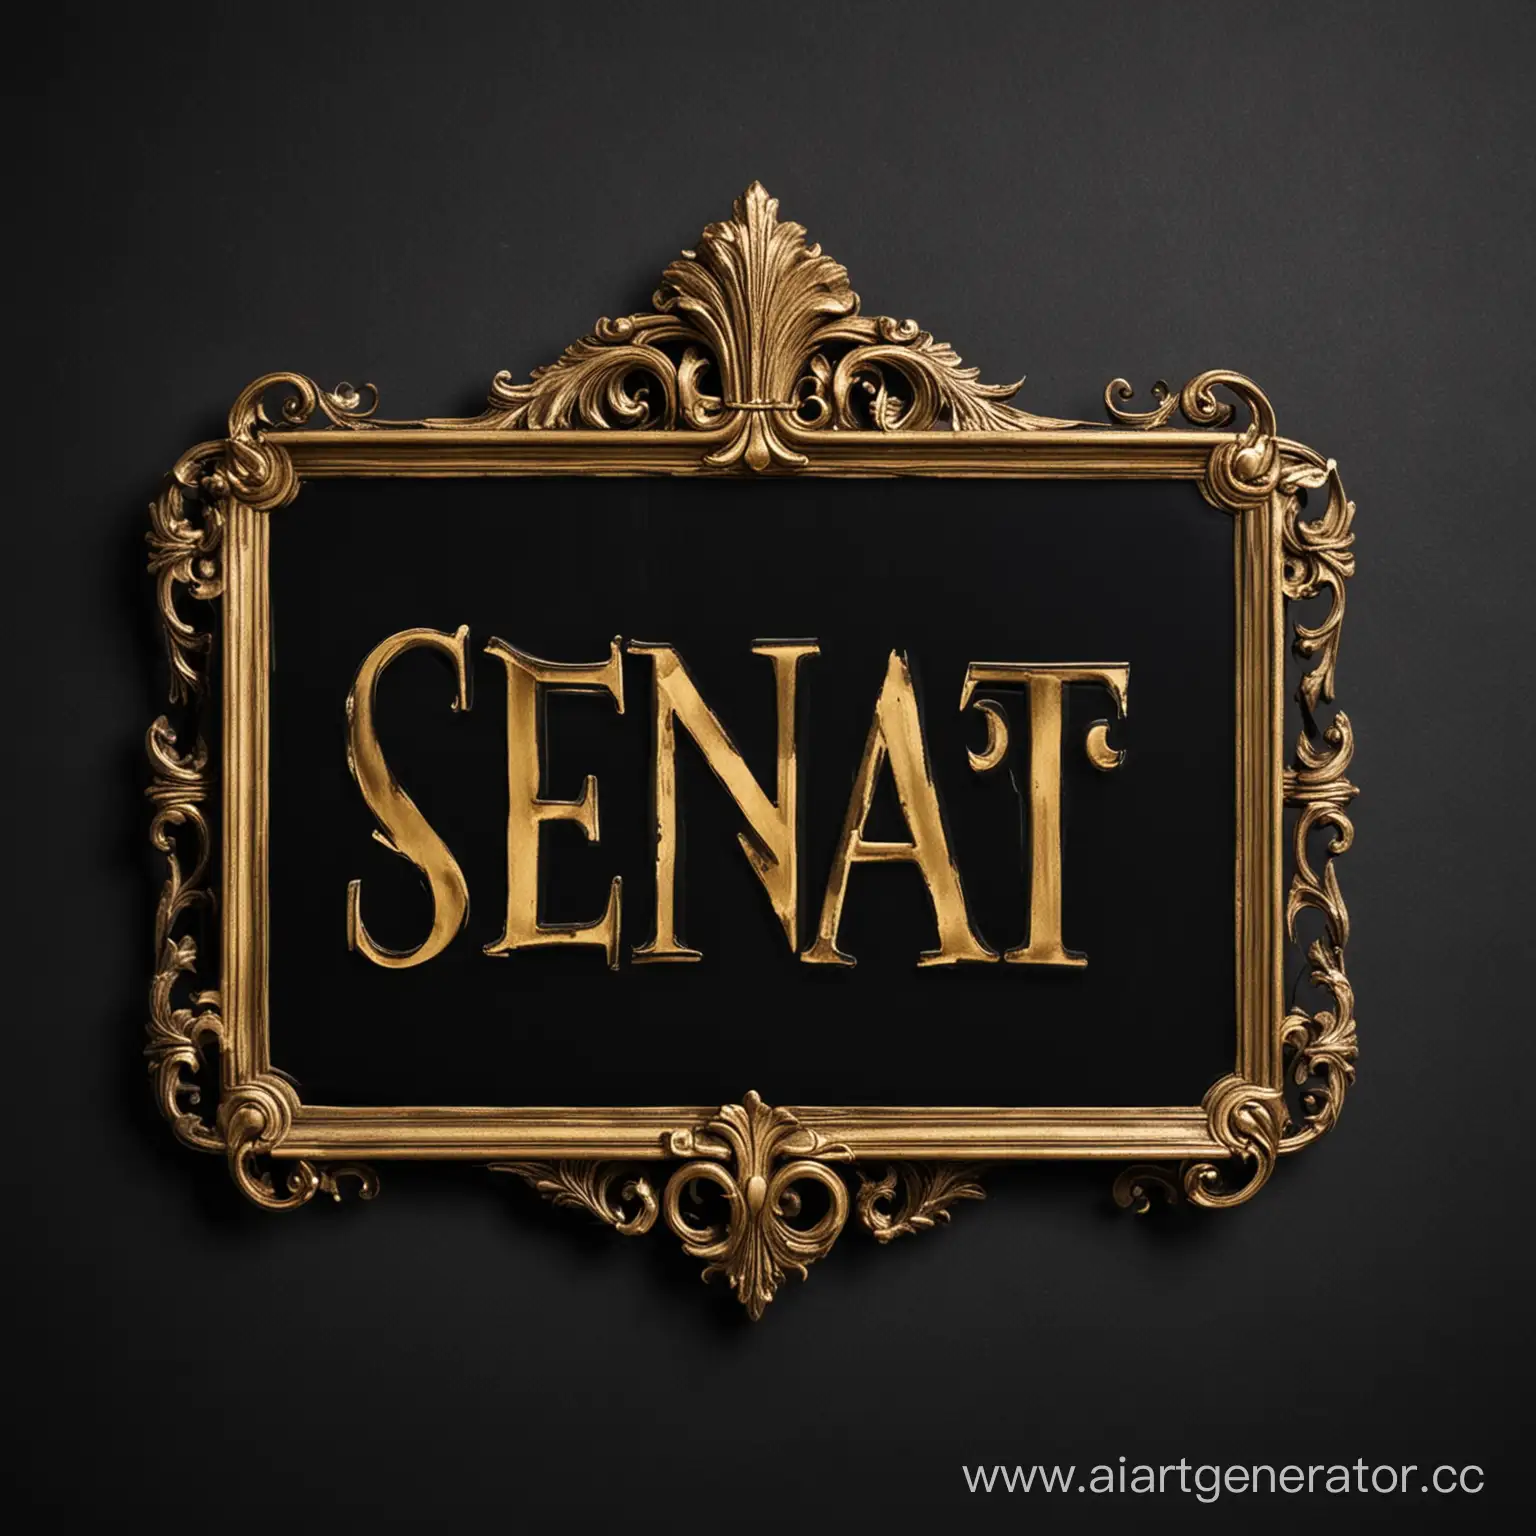 рекламный знак с надписью SENAT на чёрном фоне
